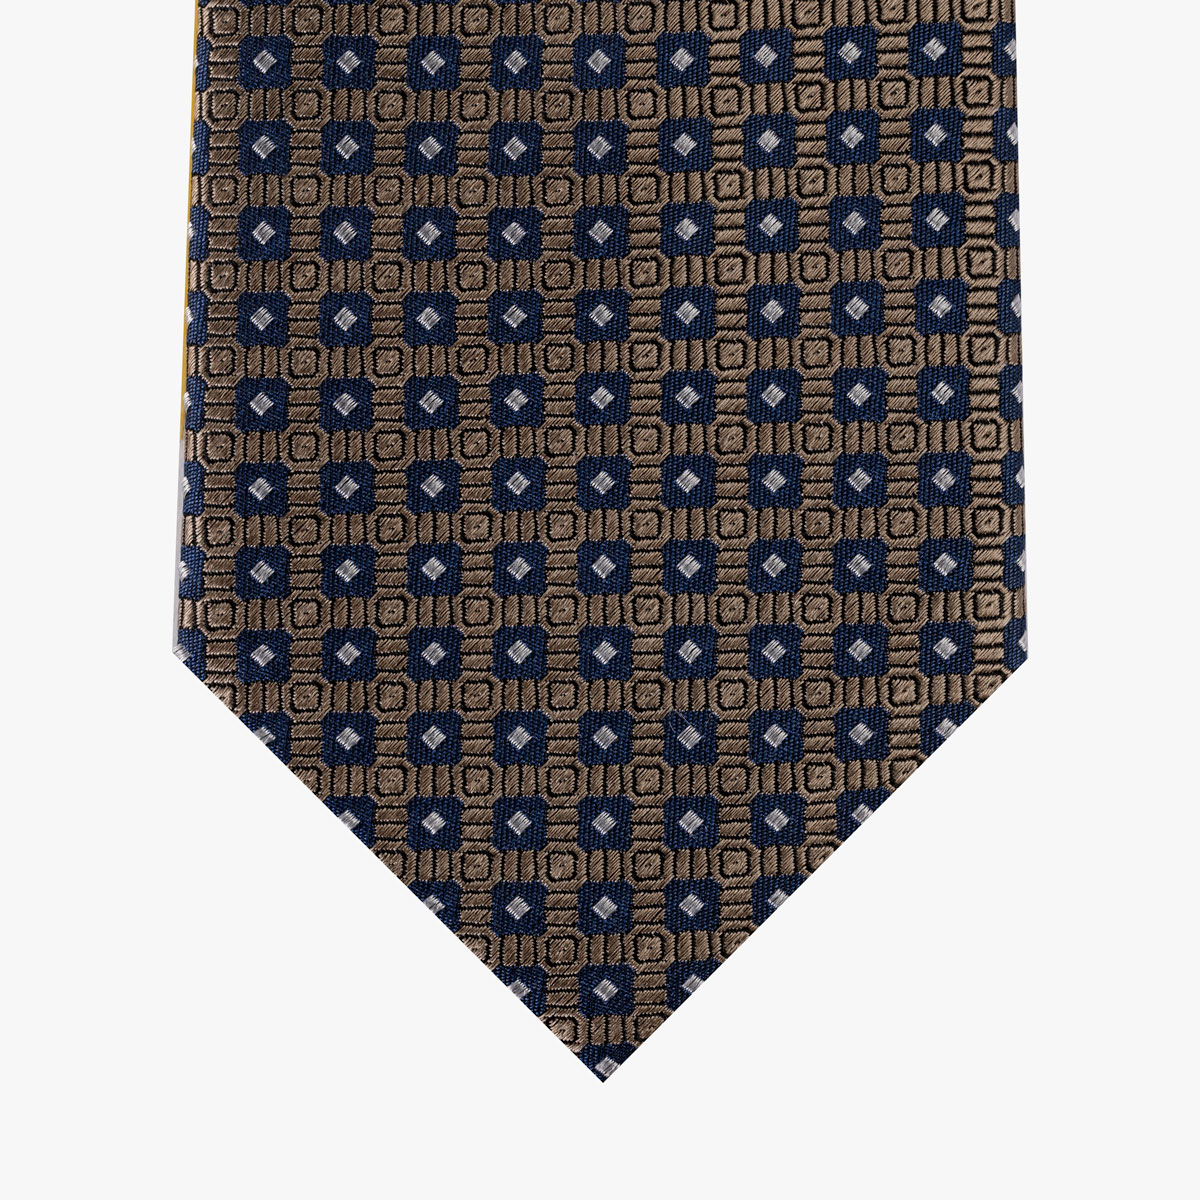 Krawatte mit geometrischem Muster in dunkelblau hellbraun